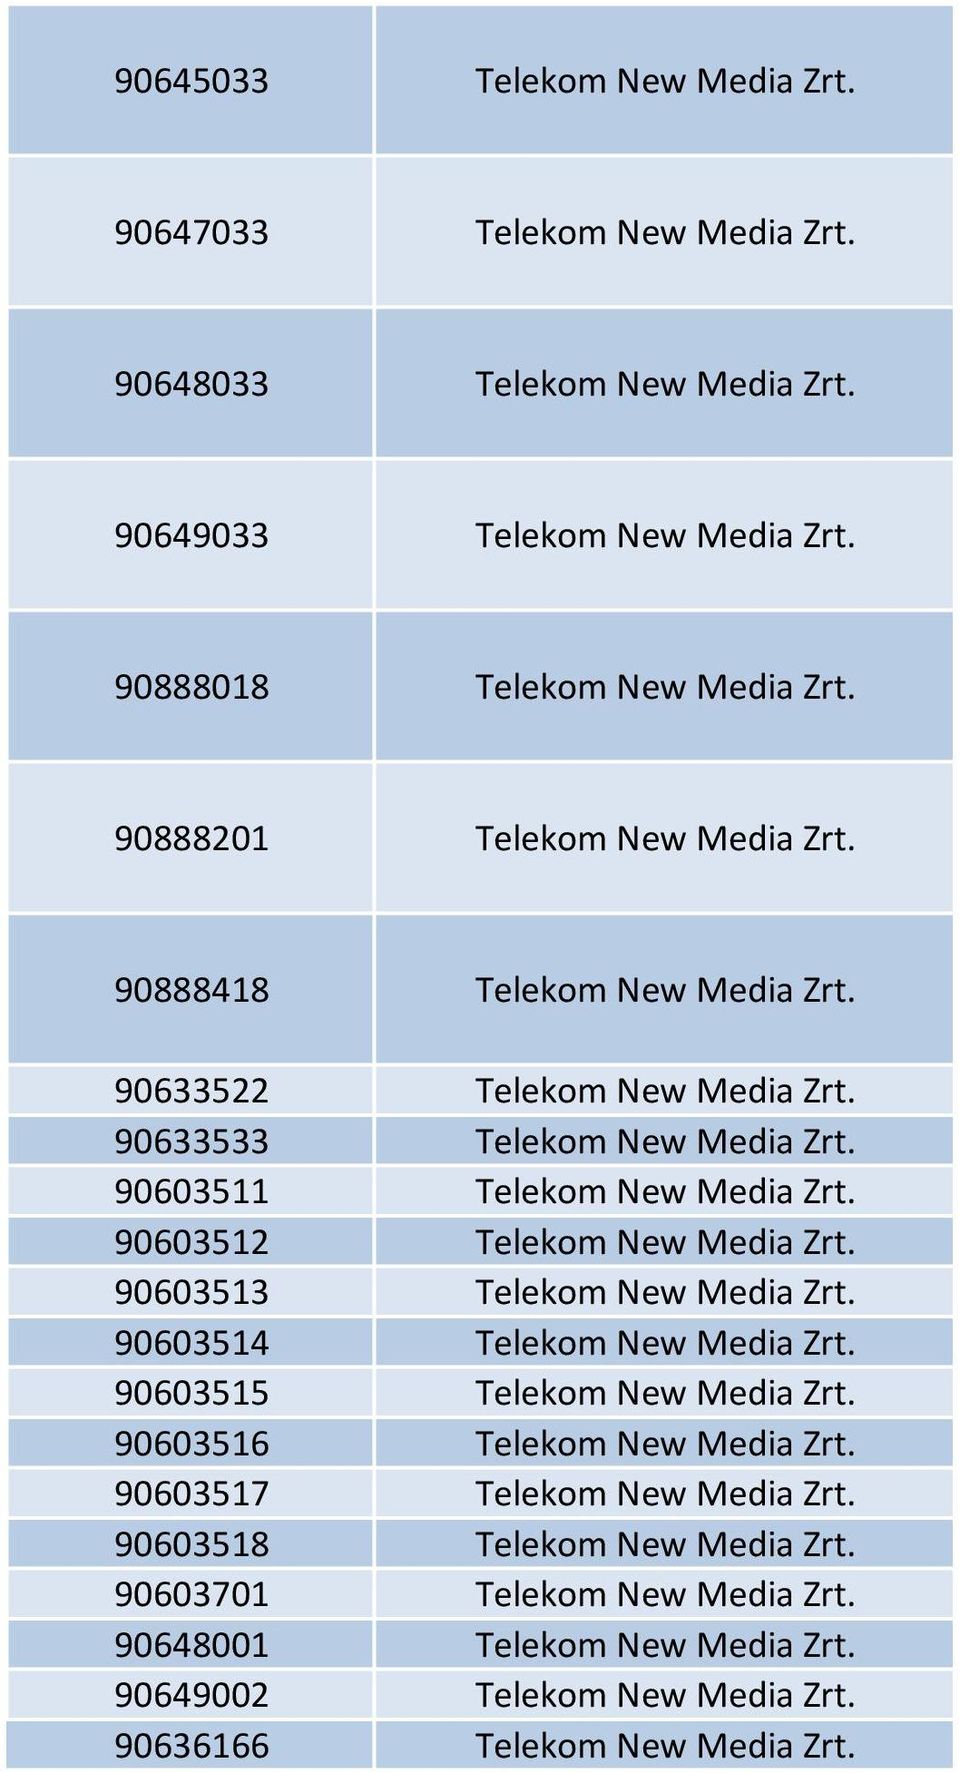 90603512 Telekom New Media Zrt. 90603513 Telekom New Media Zrt. 90603514 Telekom New Media Zrt. 90603515 Telekom New Media Zrt. 90603516 Telekom New Media Zrt.